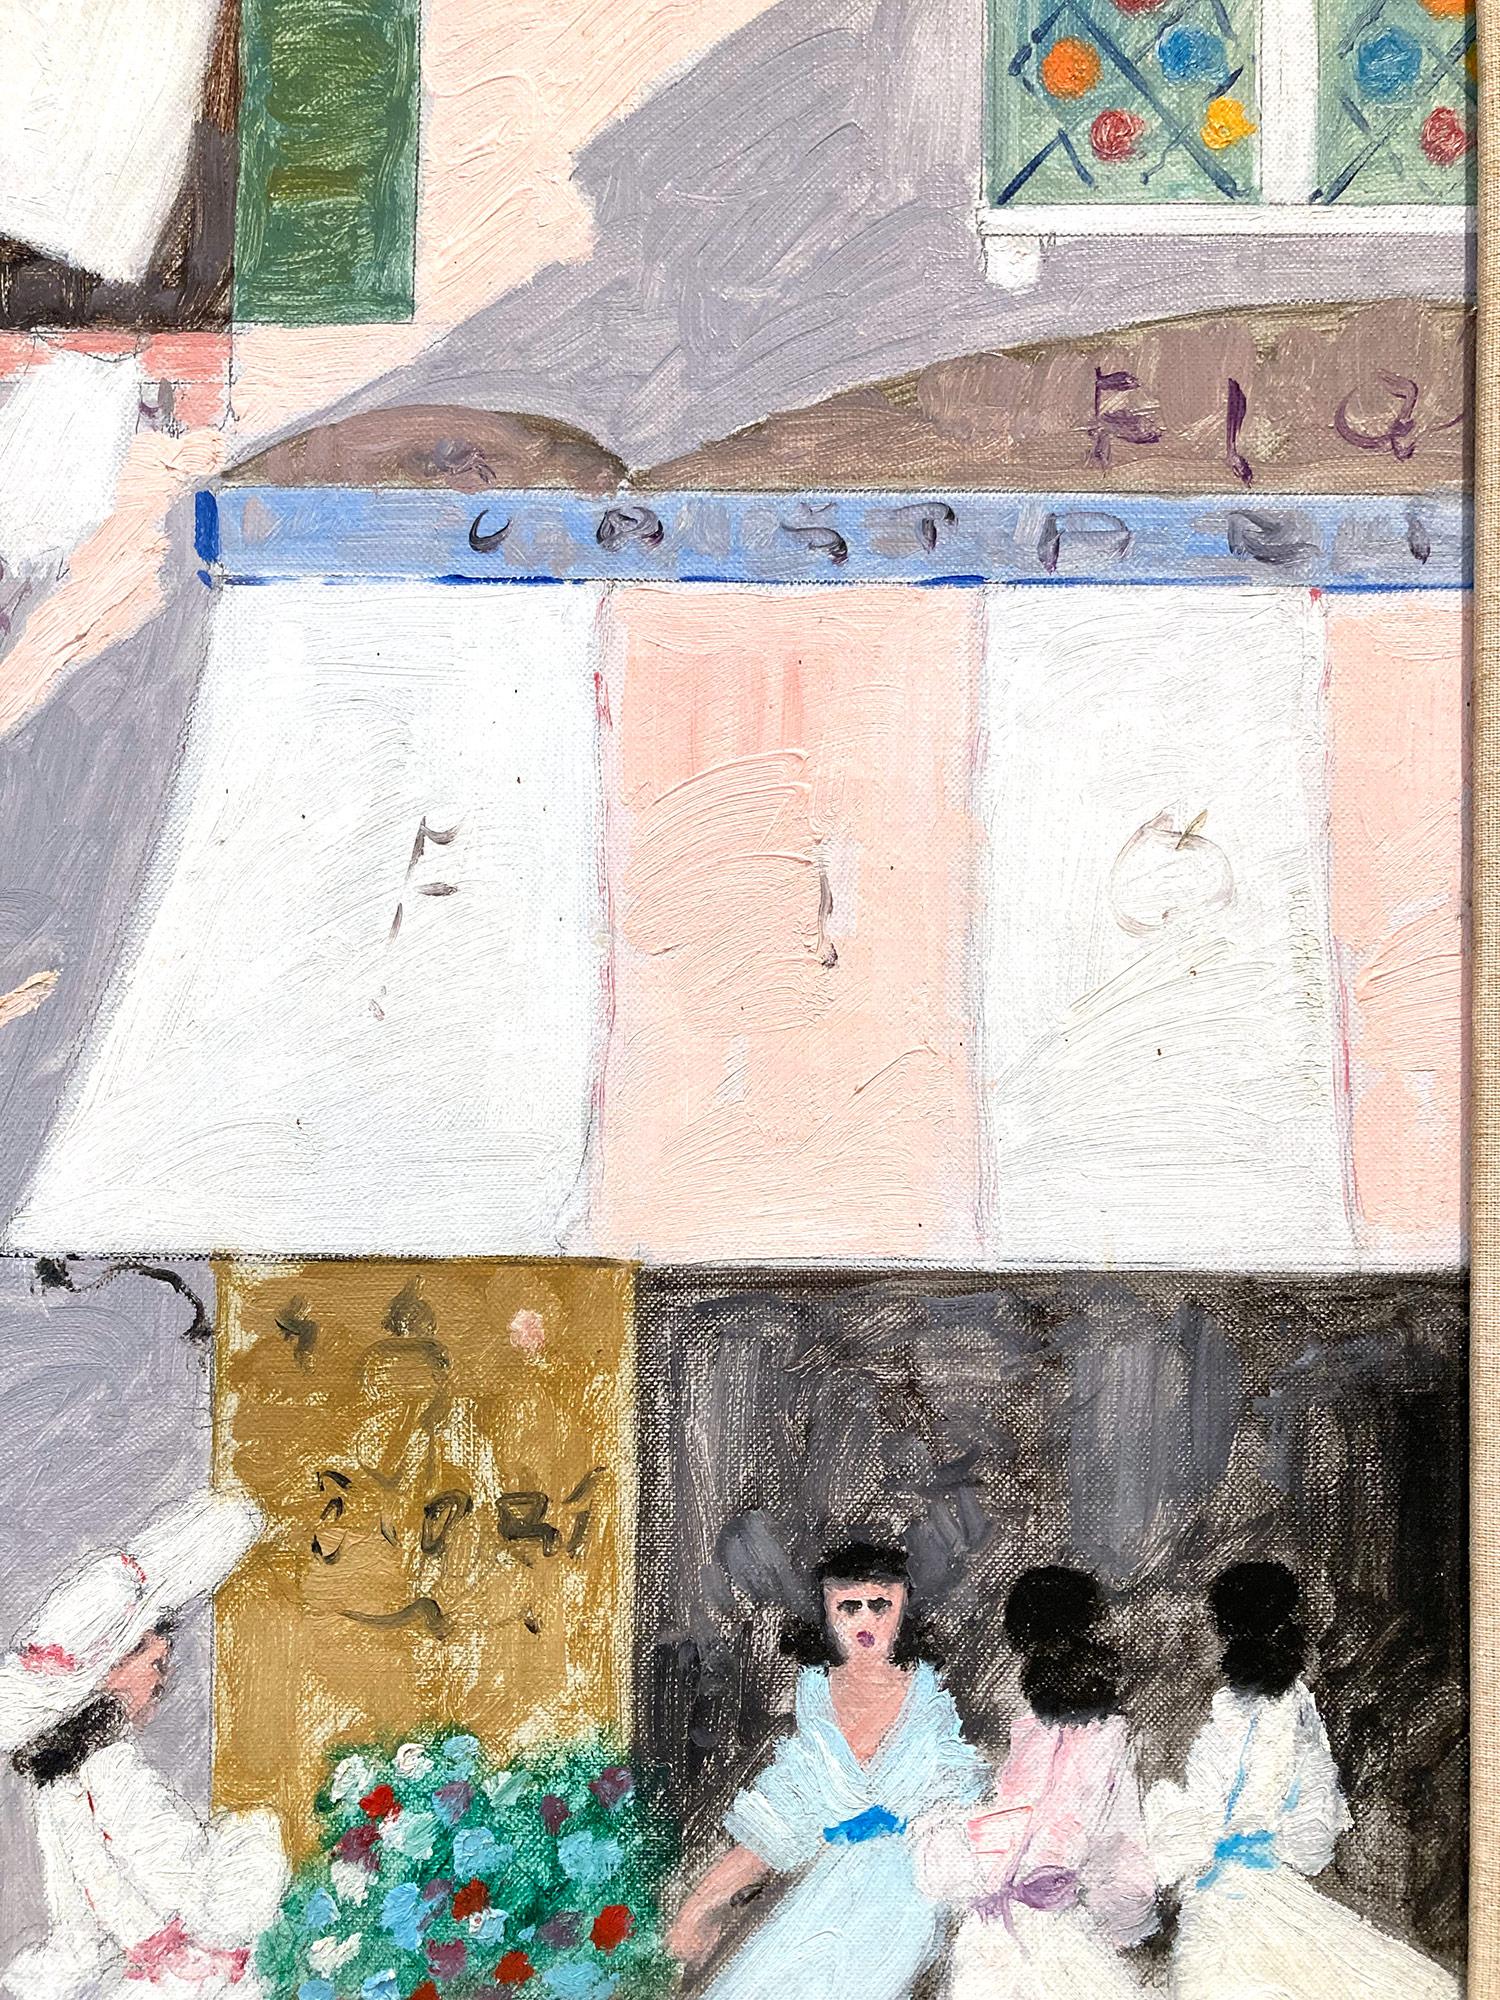 Ein skurriles Ölgemälde von Luigi Cagliani, das eine Café-Szene mit Figuren in Venedig im Frühling darstellt. Als Künstler des italienischen Impressionismus entstanden die meisten Werke Caglianis in der ersten Hälfte des 20. Jahrhunderts. Er war